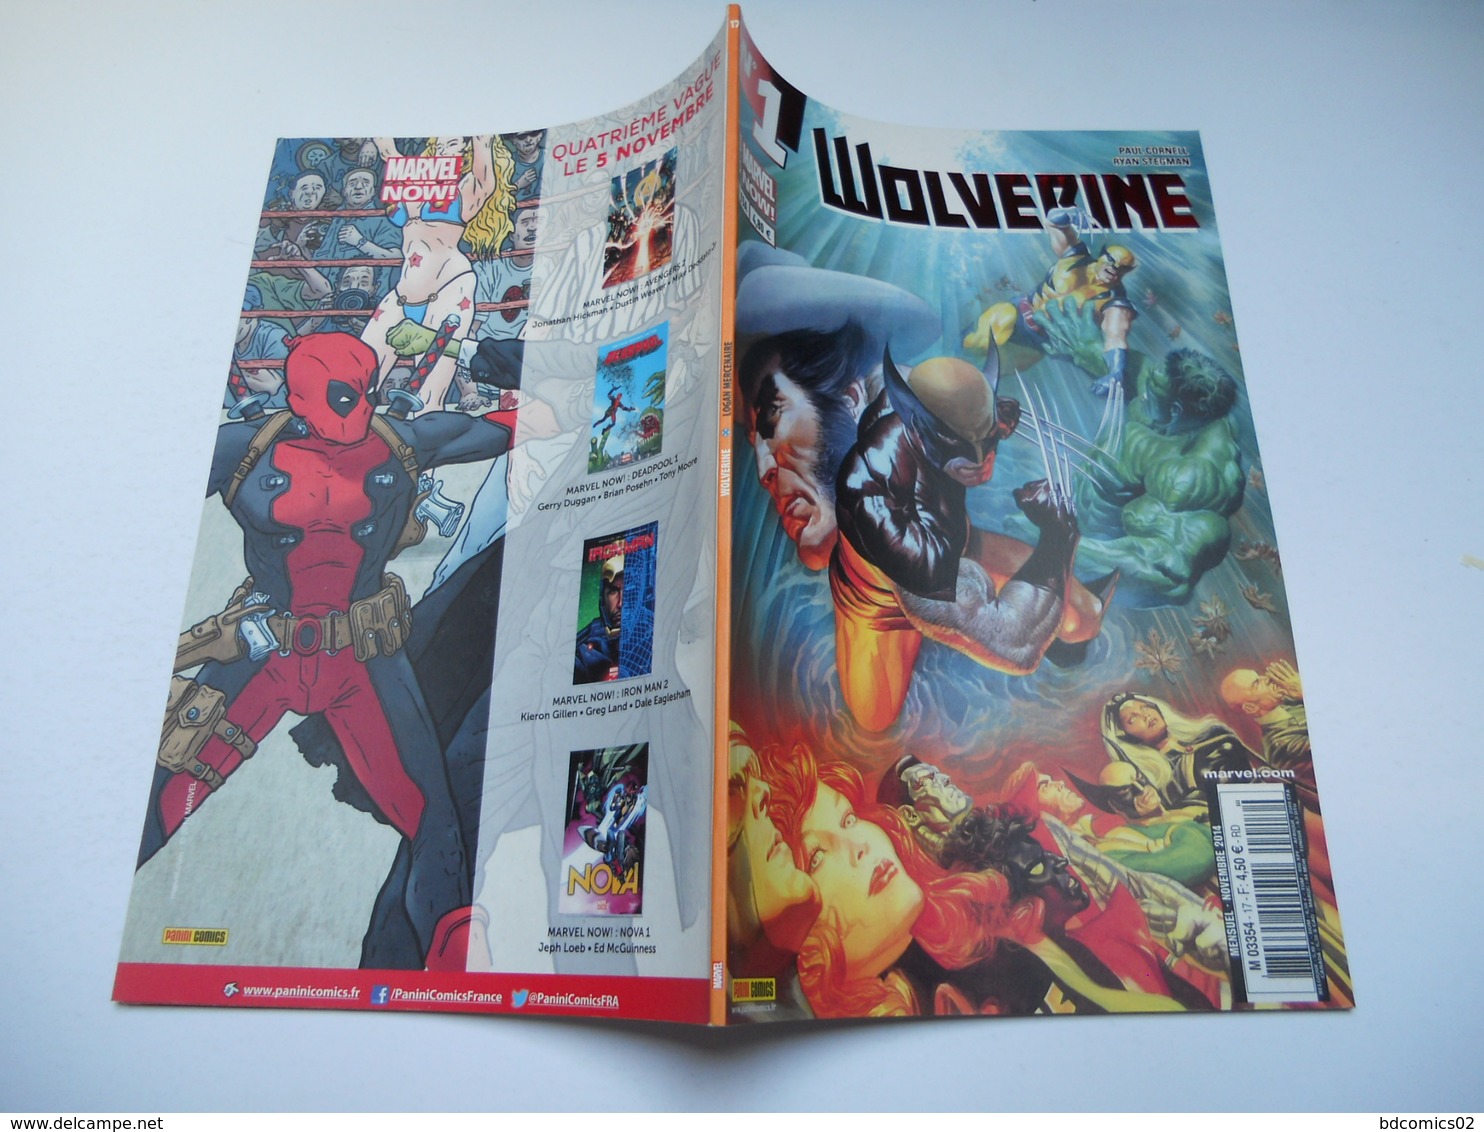 Wolverine N° 17 ( Numéroté 15a Sur La Couverture Au Lieu De 17 ) - Logan Mercenaire " : TRES BON ETAT - Volverine